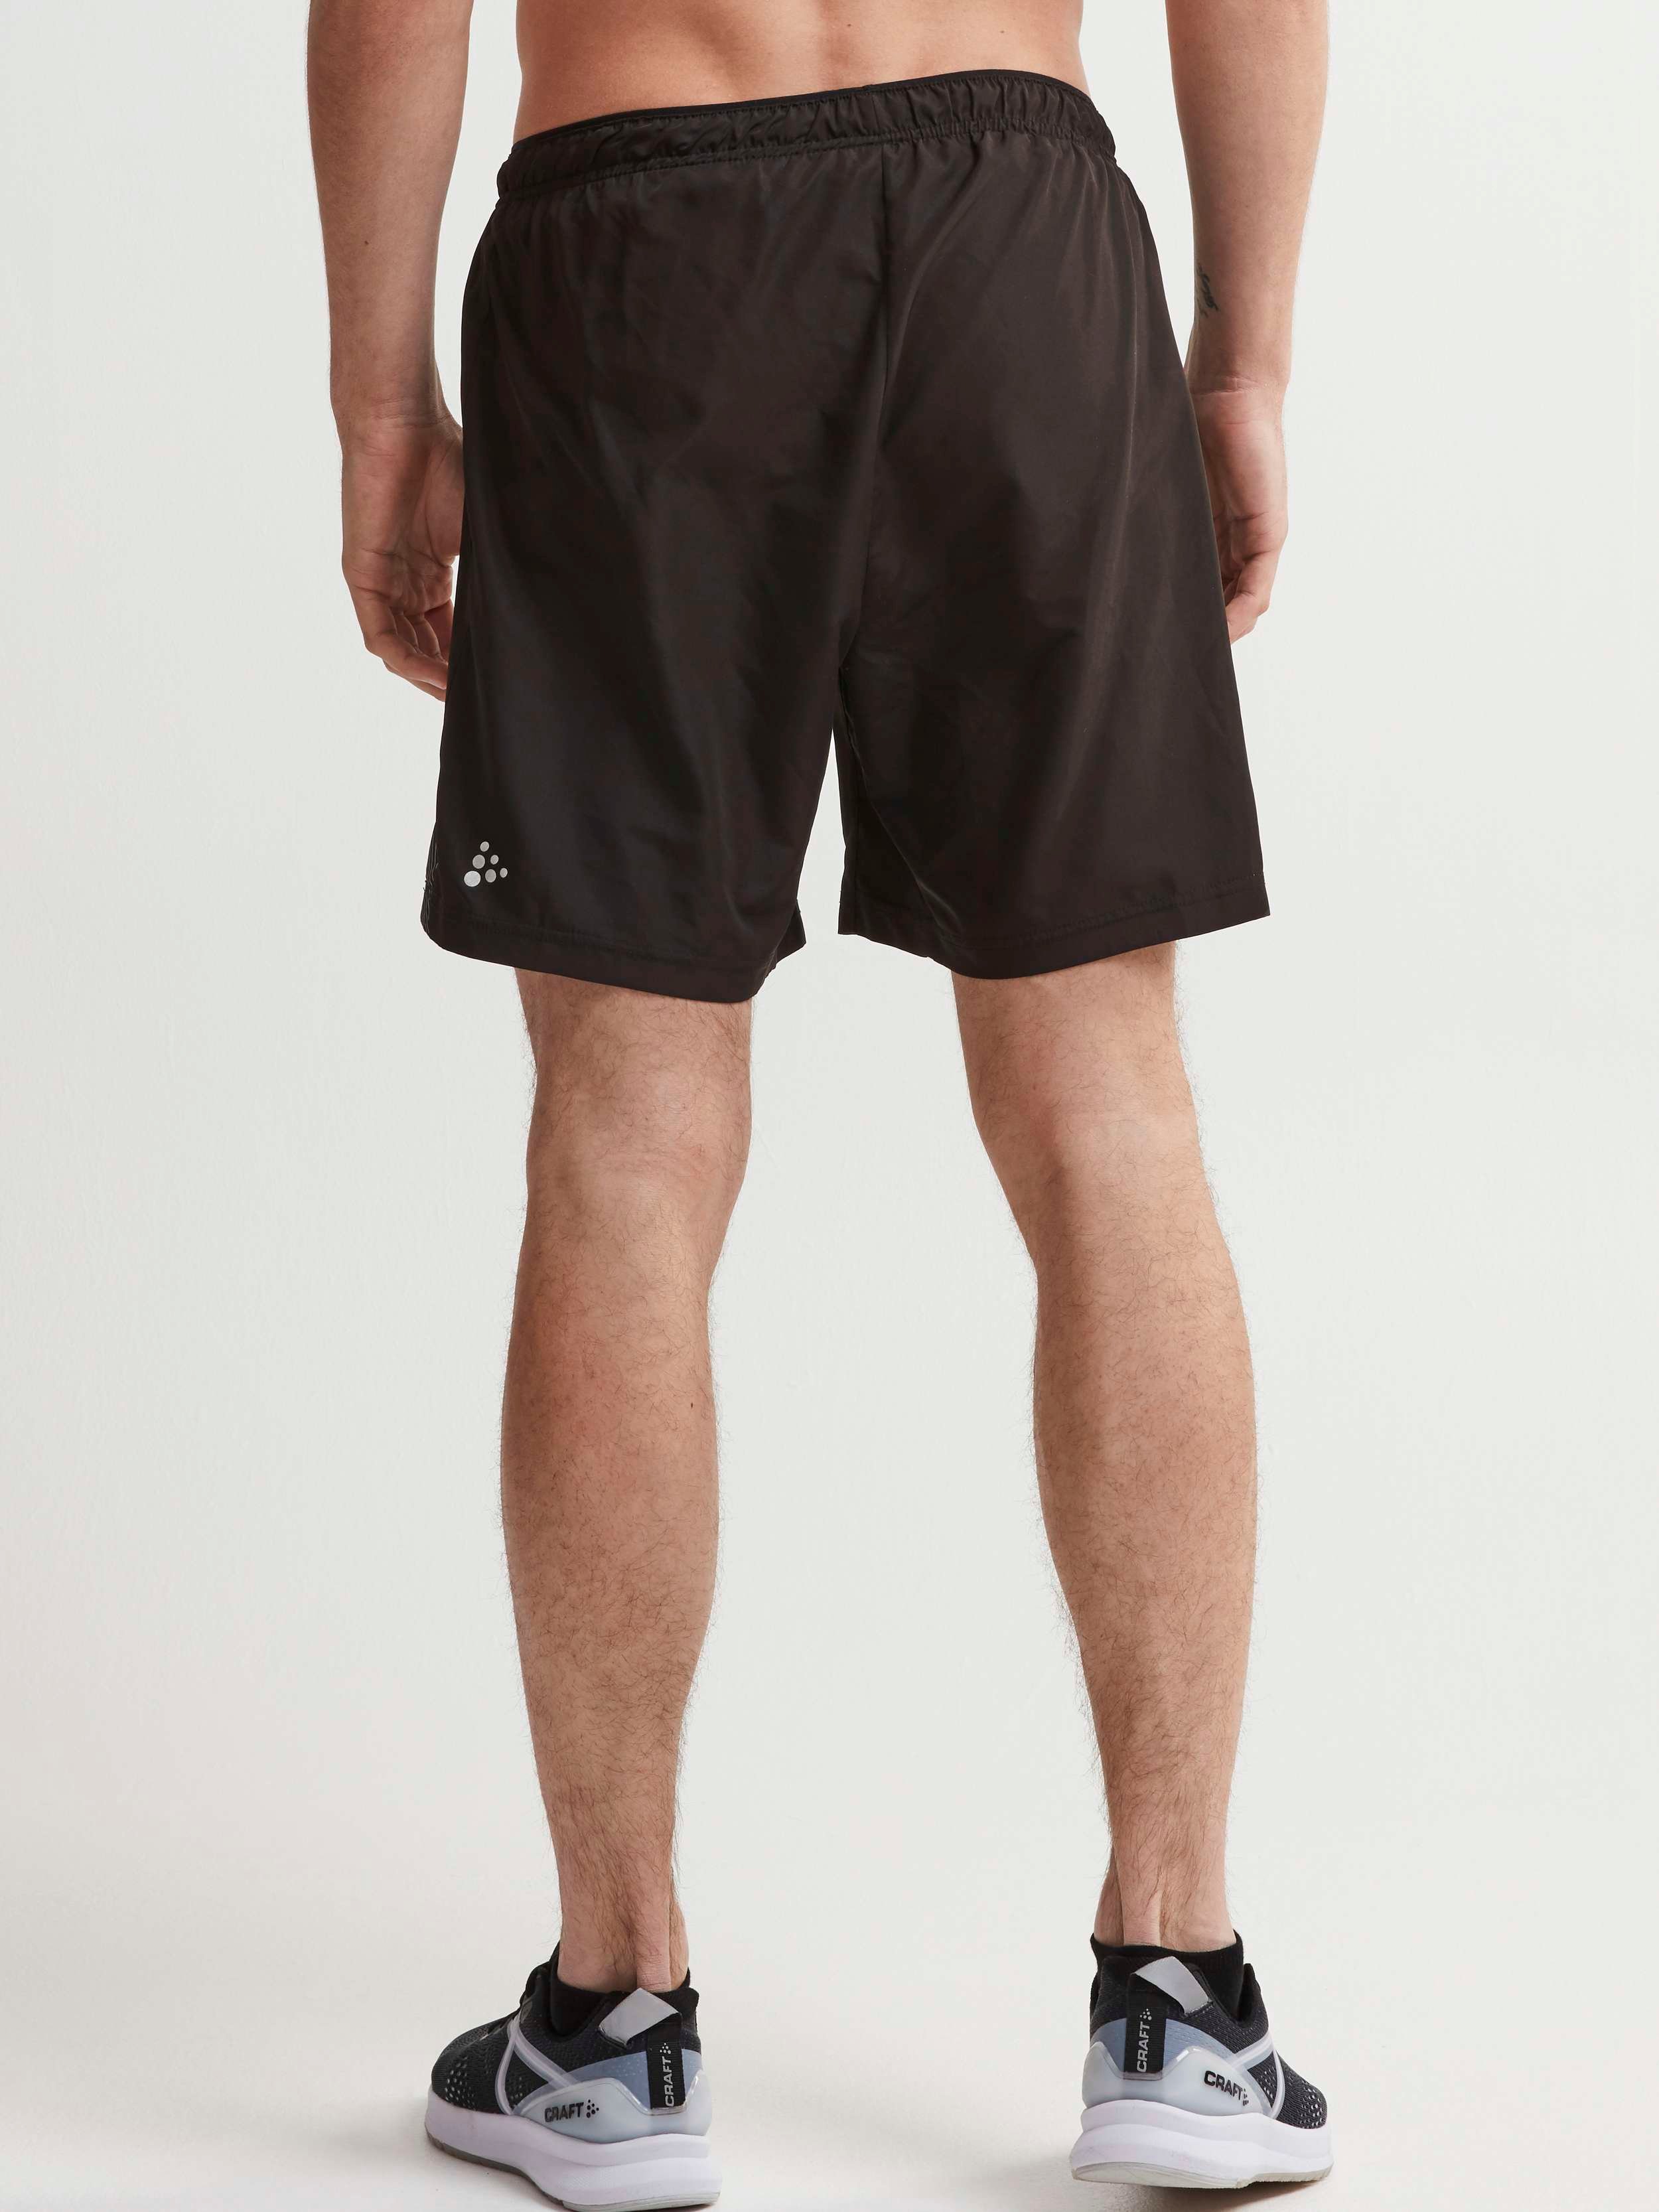 Eaze Woven Shorts M - Black | Craft Sportswear